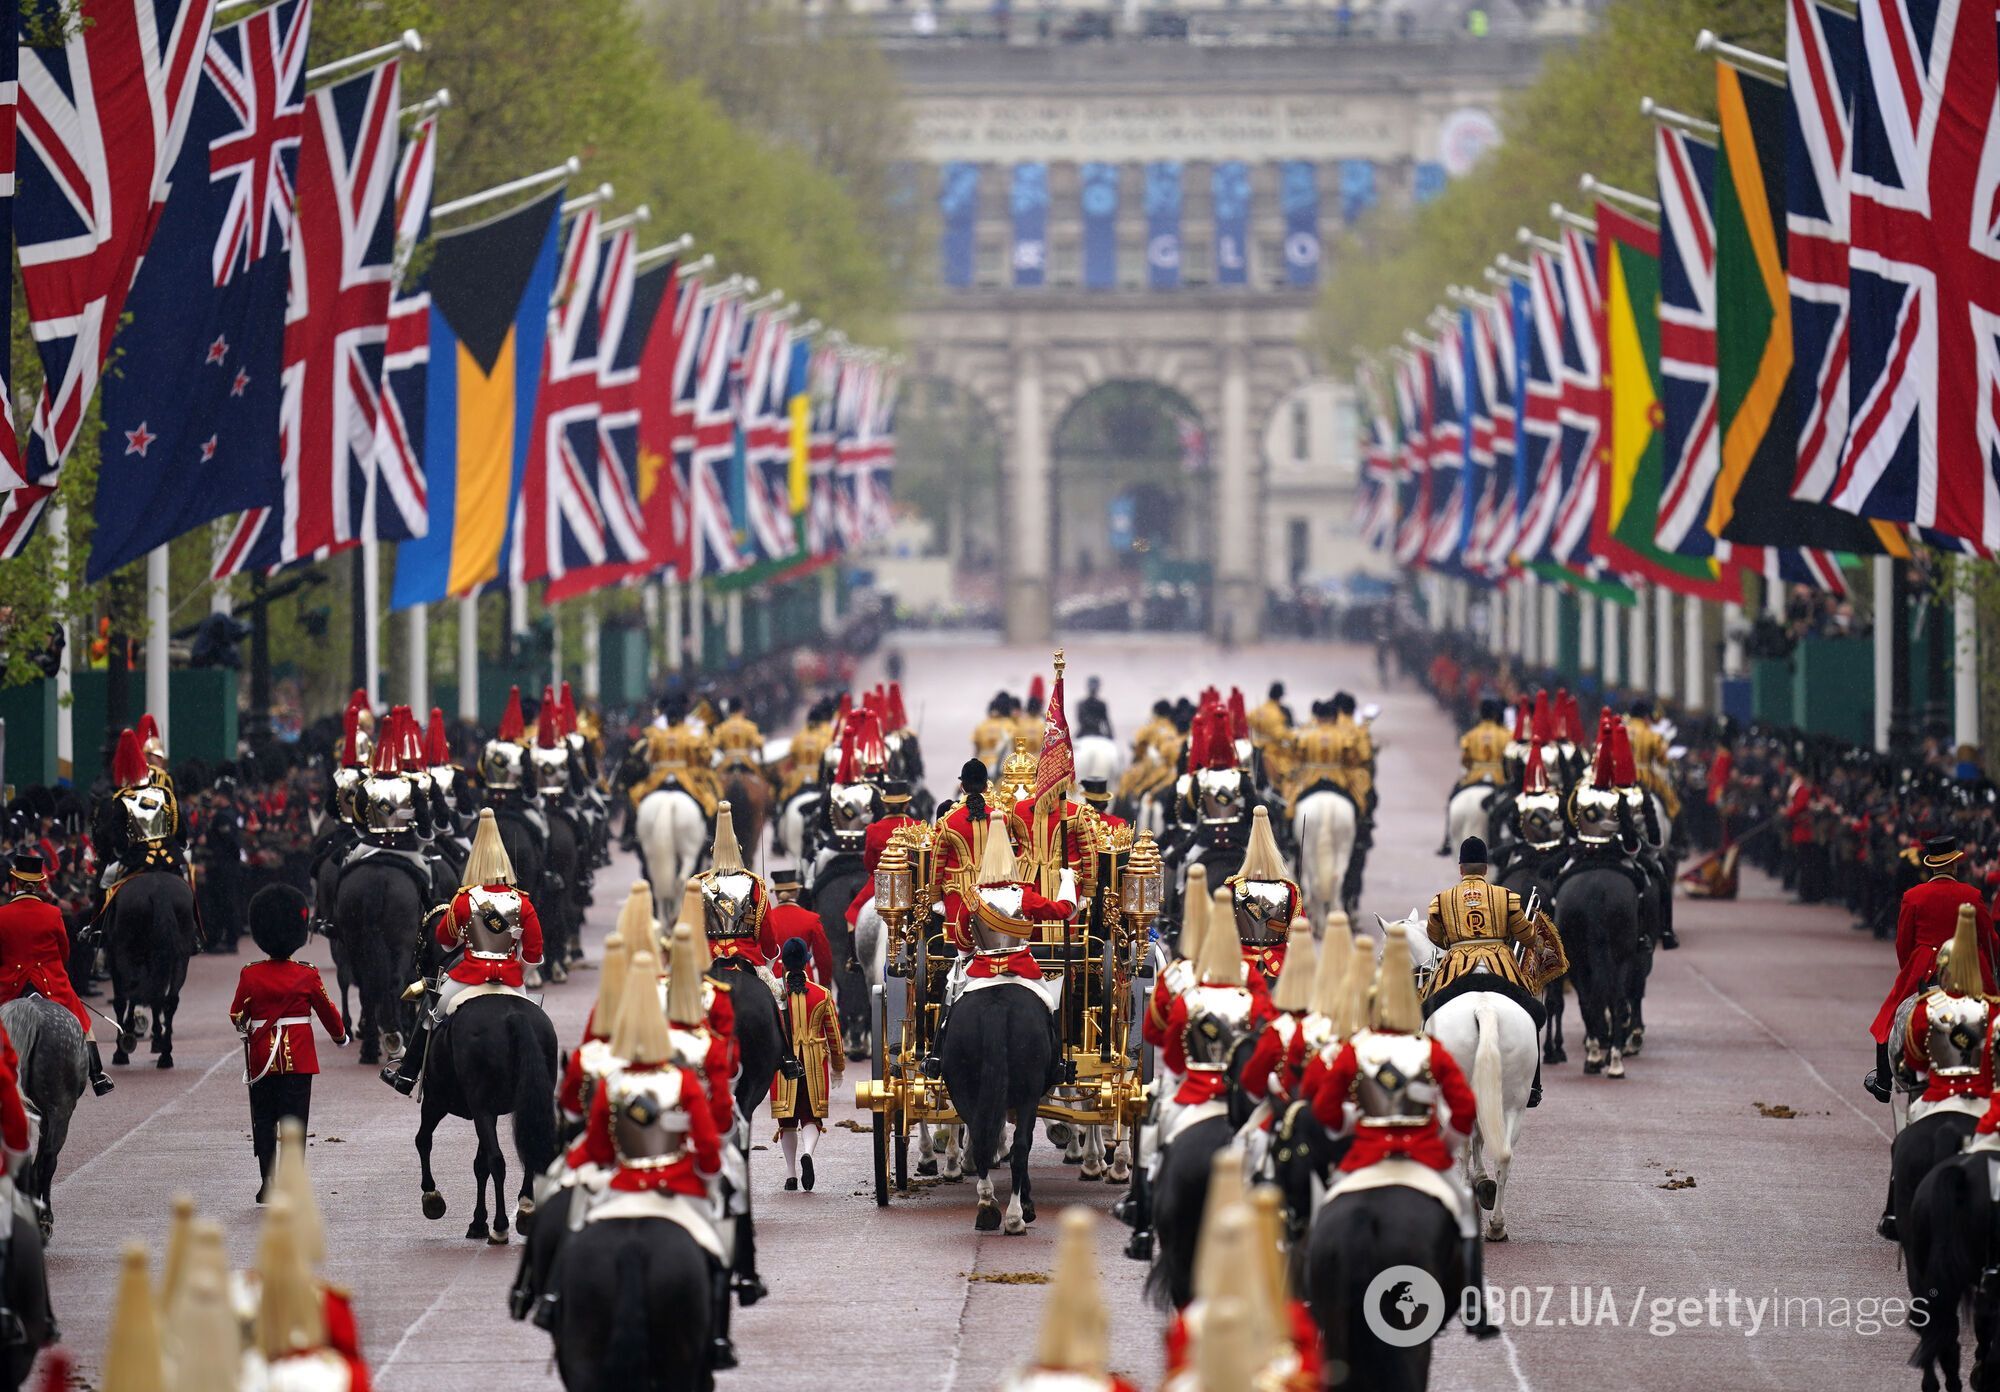 Чарльз III официально стал королем Великобритании: церемония прошла в присутствии 2000 гостей. Все подробности с фото и видео